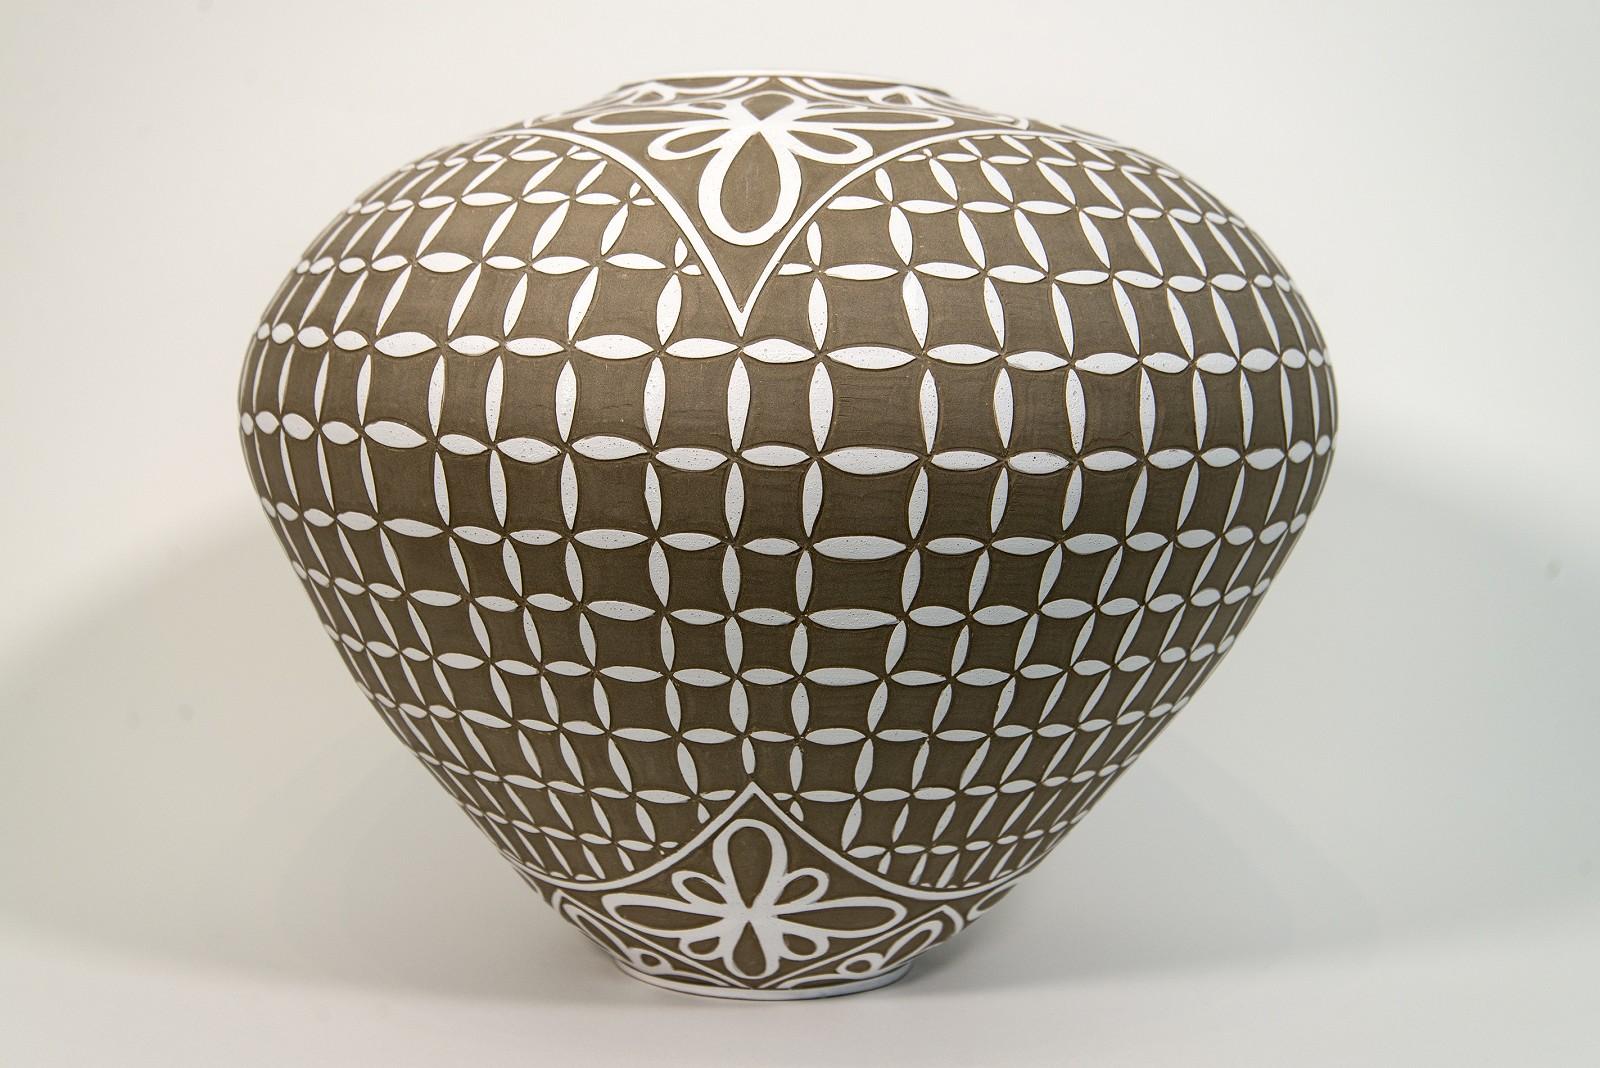 Großes Gefäß mit graviertem Blütenblattmotiv – dekoratives, handgefertigtes Porzellangefäß – Sculpture von Loren Kaplan